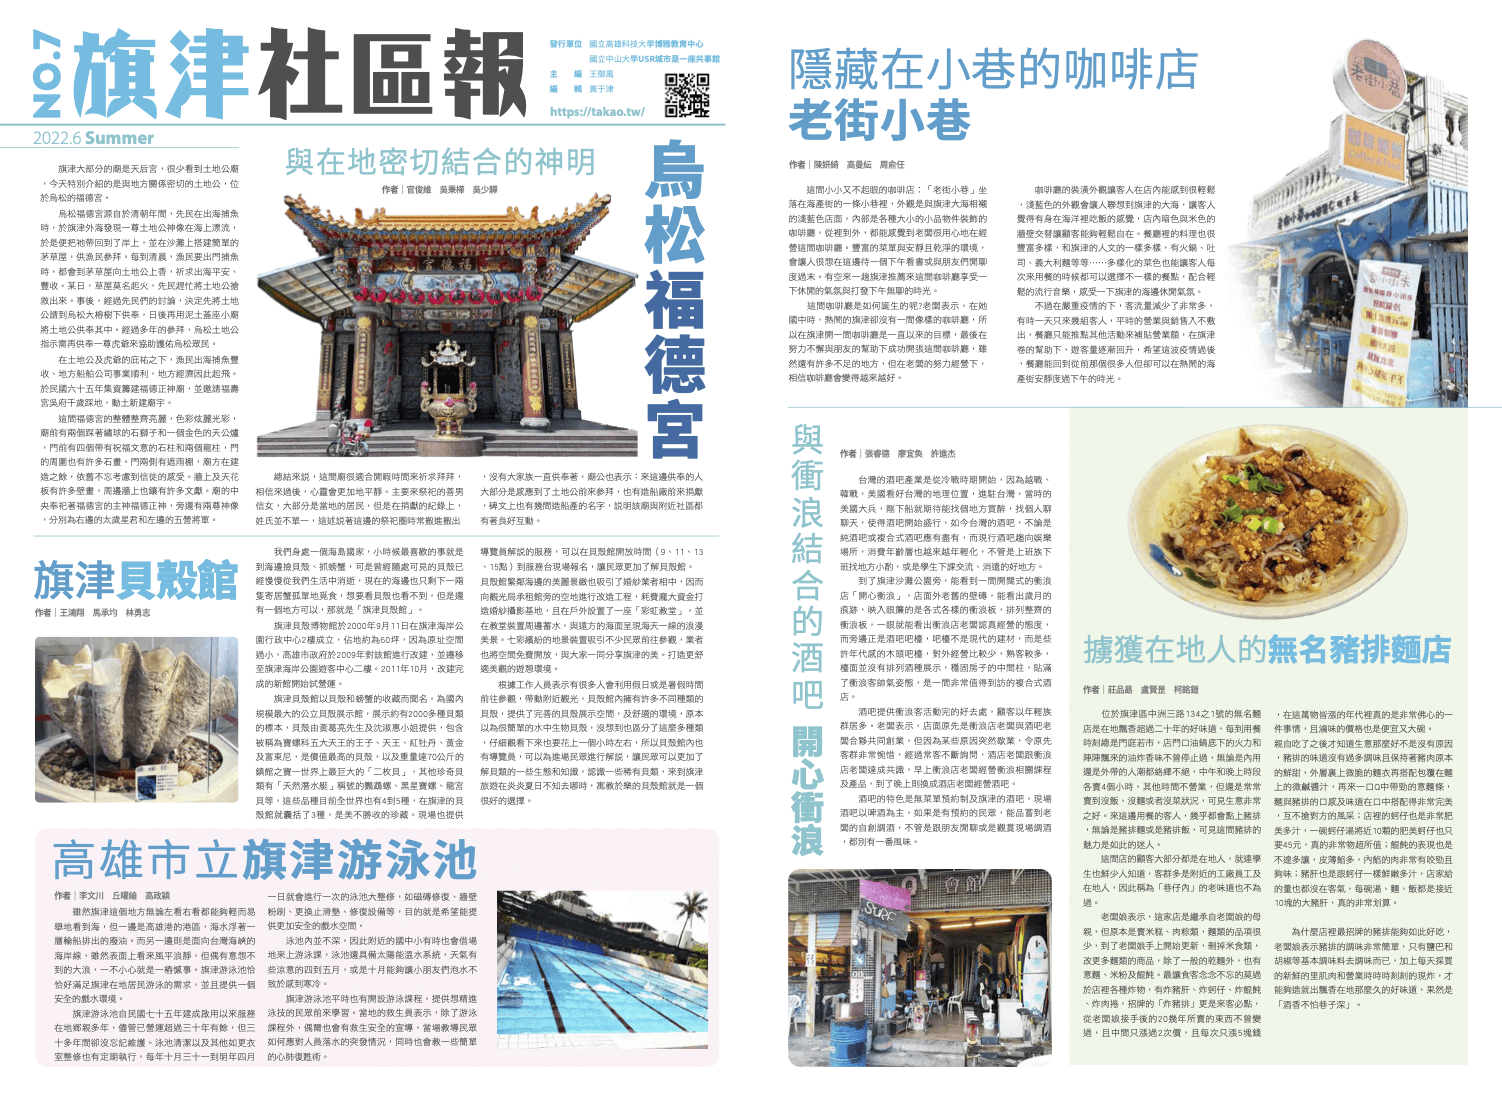 Community News of Cijin No.7